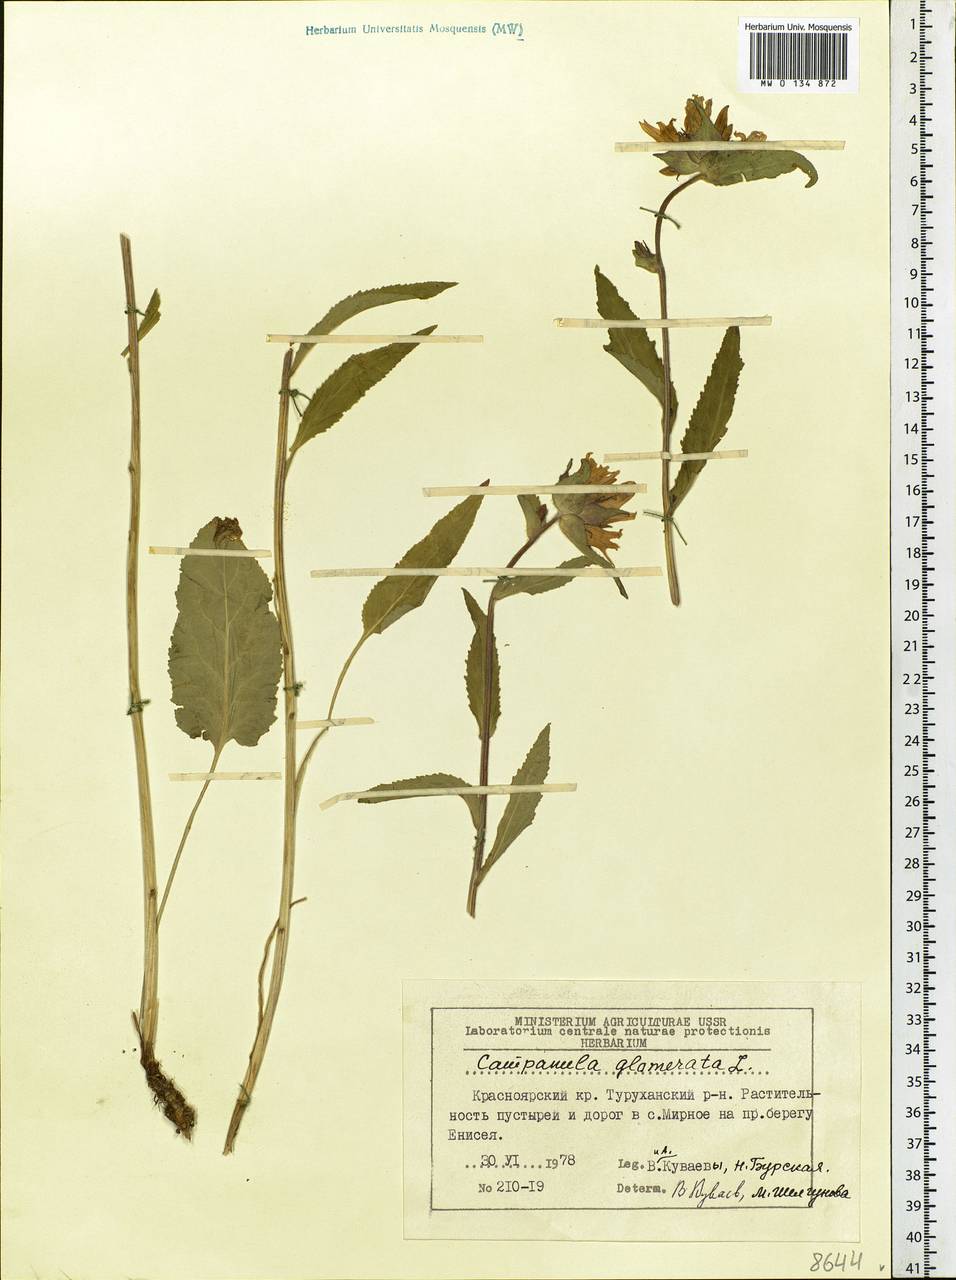 Campanula glomerata L., Siberia, Central Siberia (S3) (Russia)